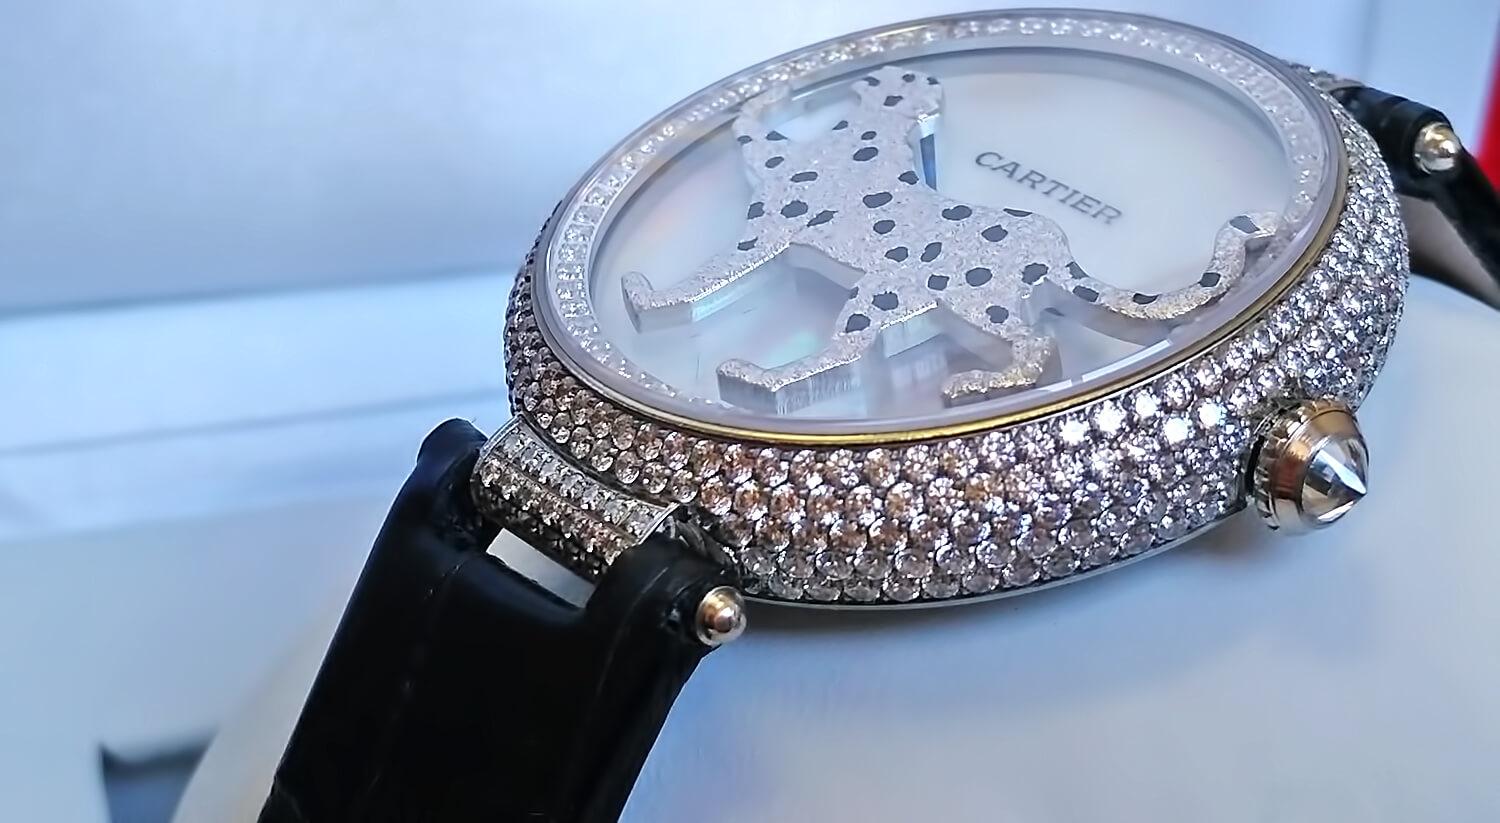 Заводная головка реплики часов Cartier PROMENADE D'UNE PANTHÈRE оформлена прозрачным фианитом